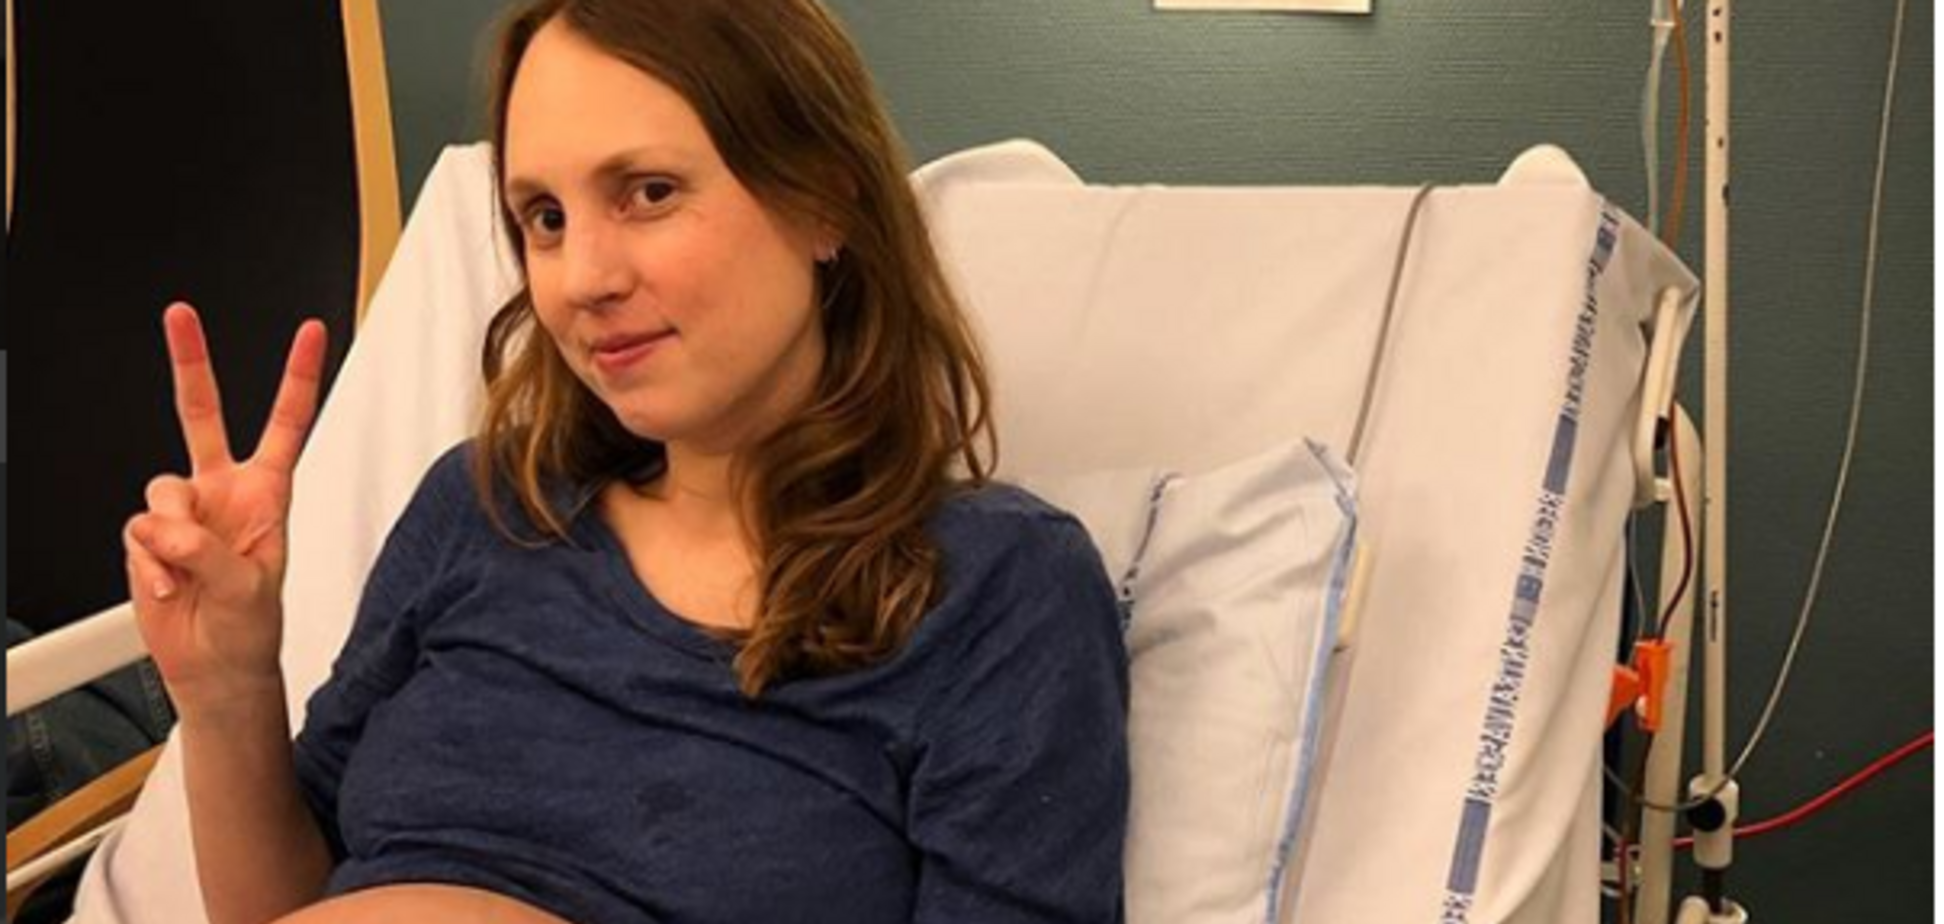  'Ужасно и прекрасно': беременная женщина стала звездой сети из-за своего живота